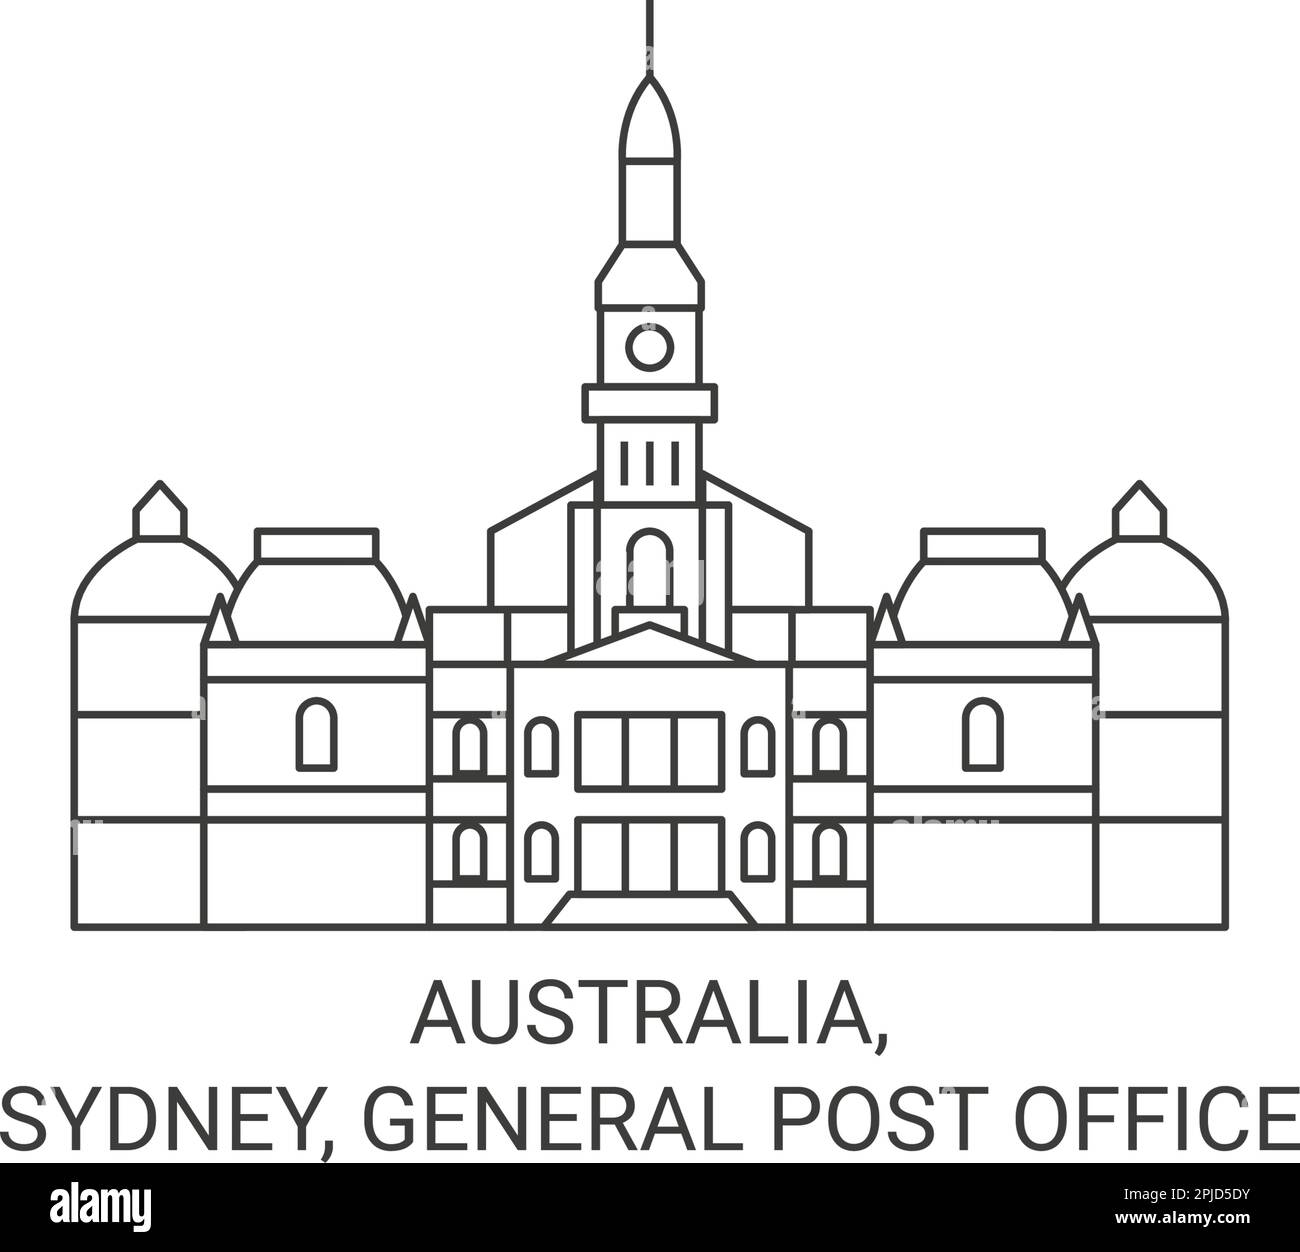 Australie, Sydney, General Post Office Travel illustration vectorielle Illustration de Vecteur